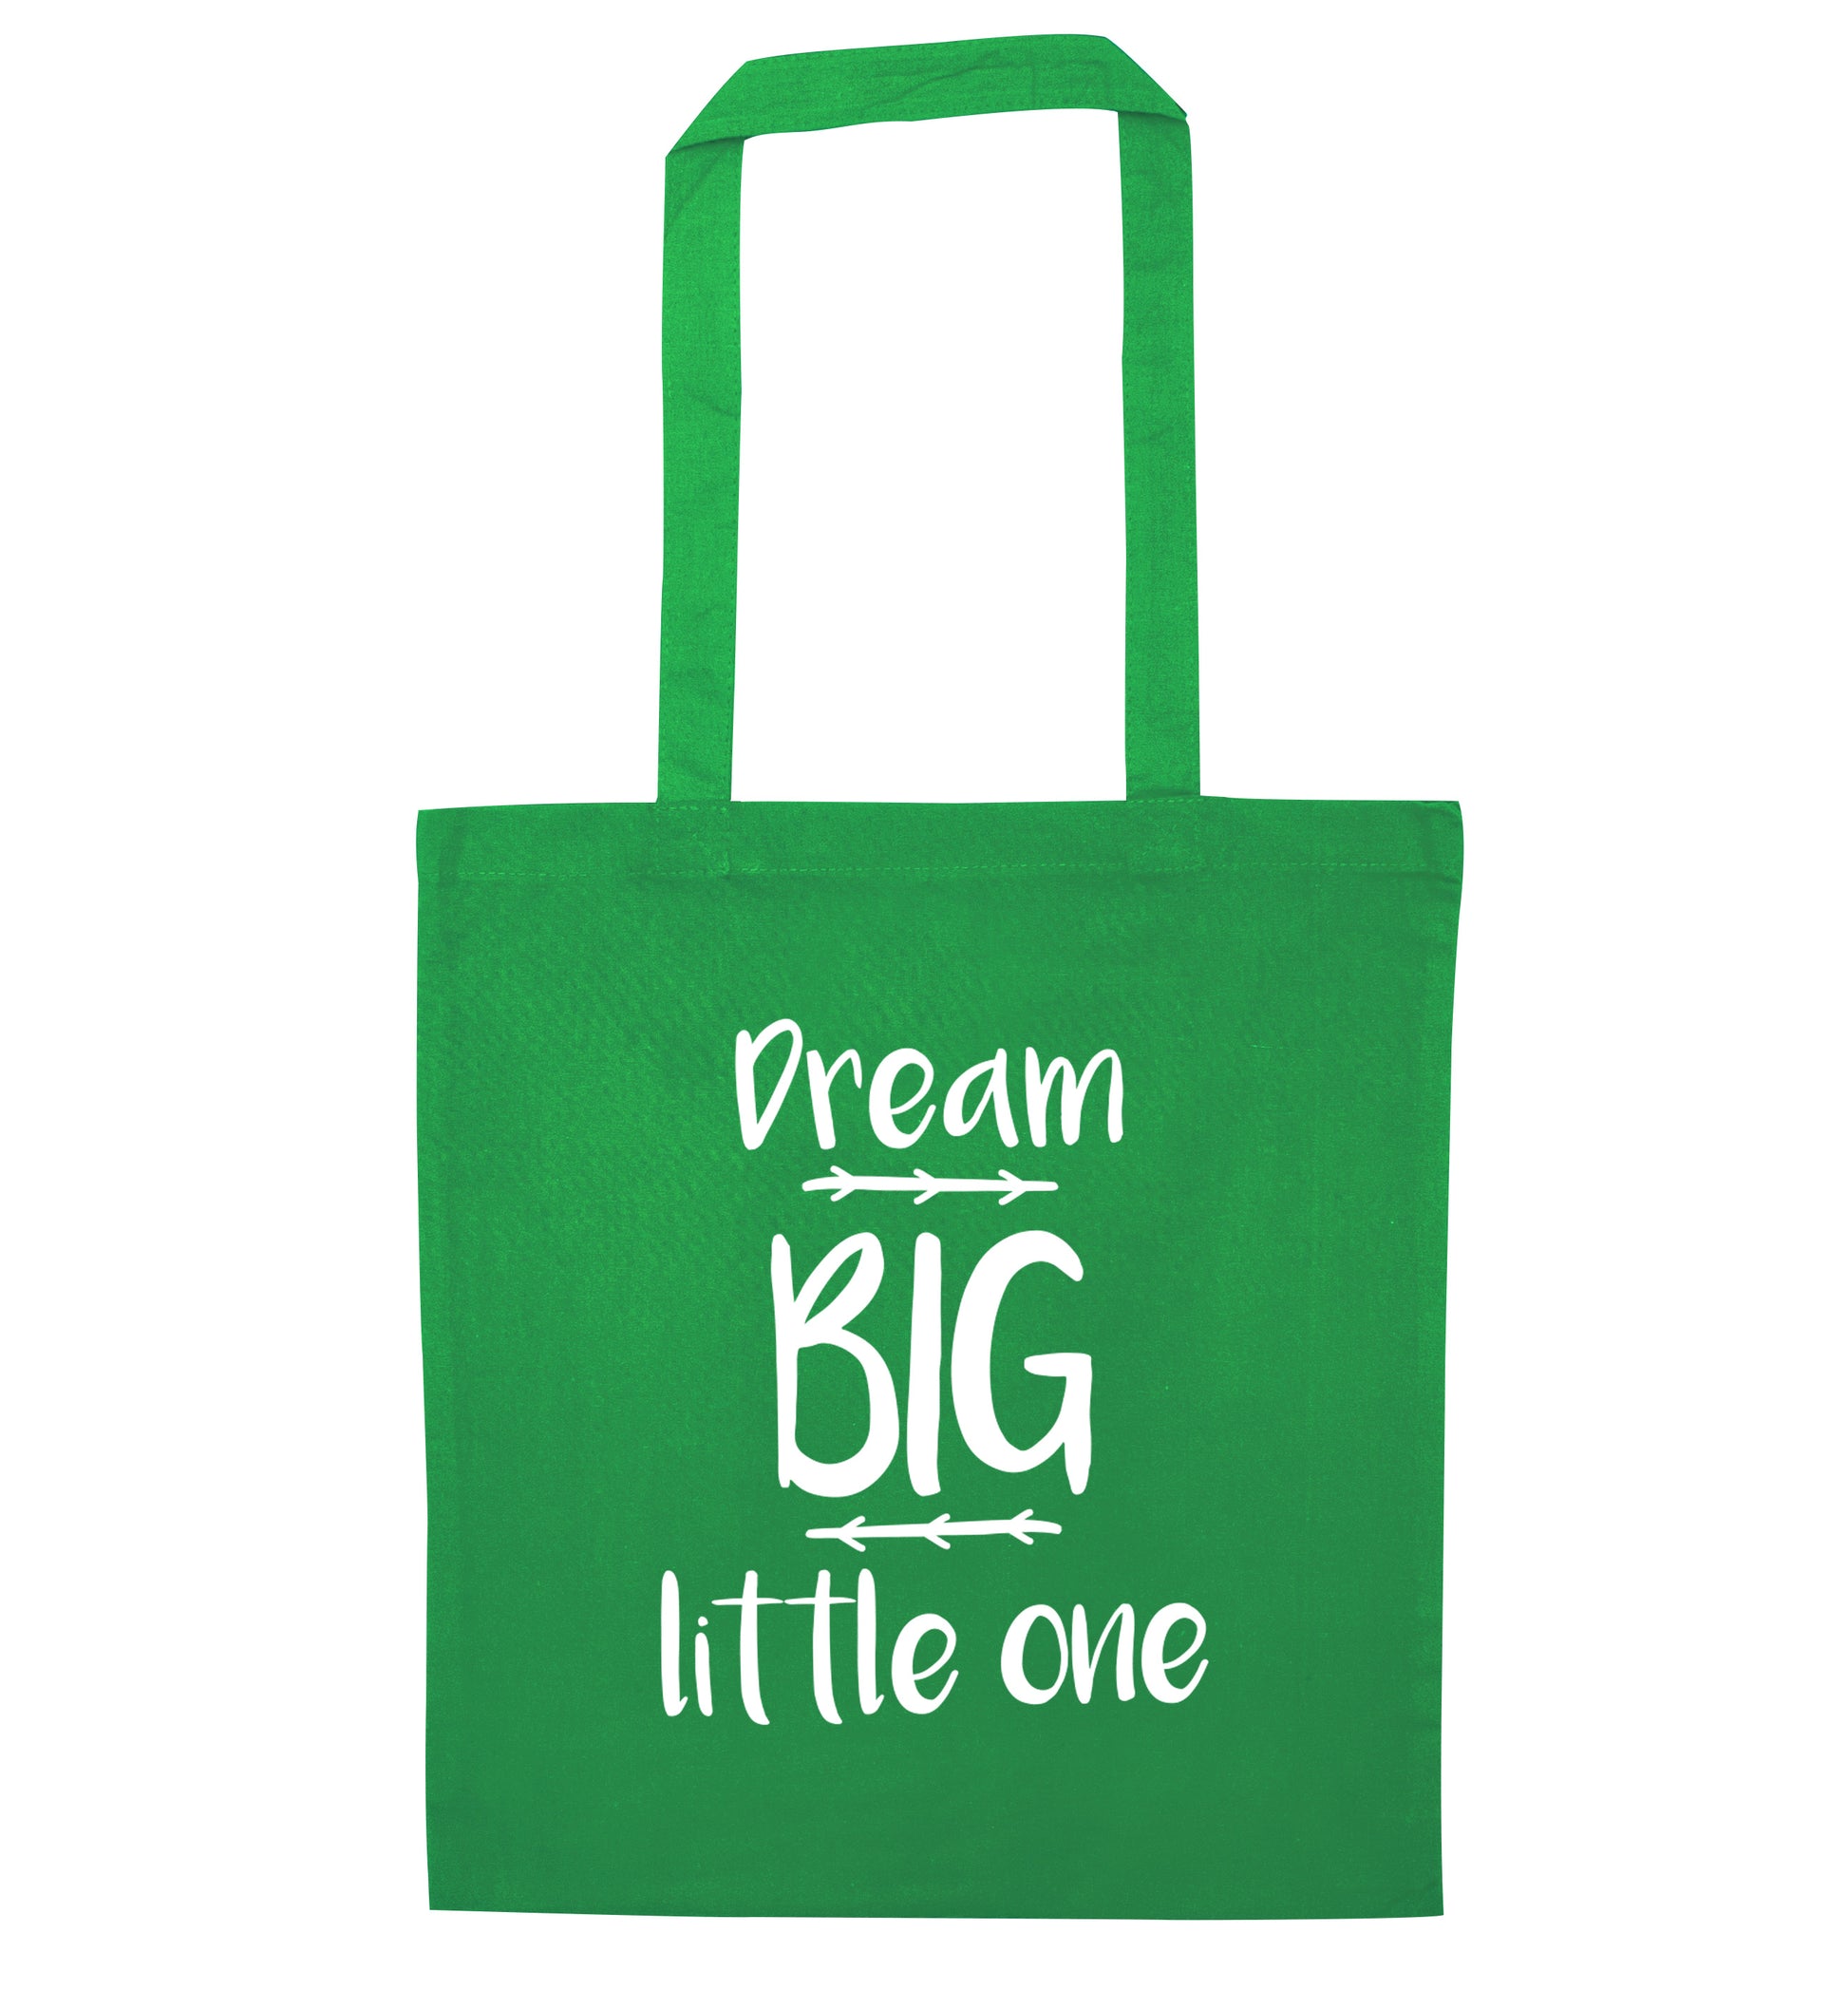 Dream big little one green tote bag